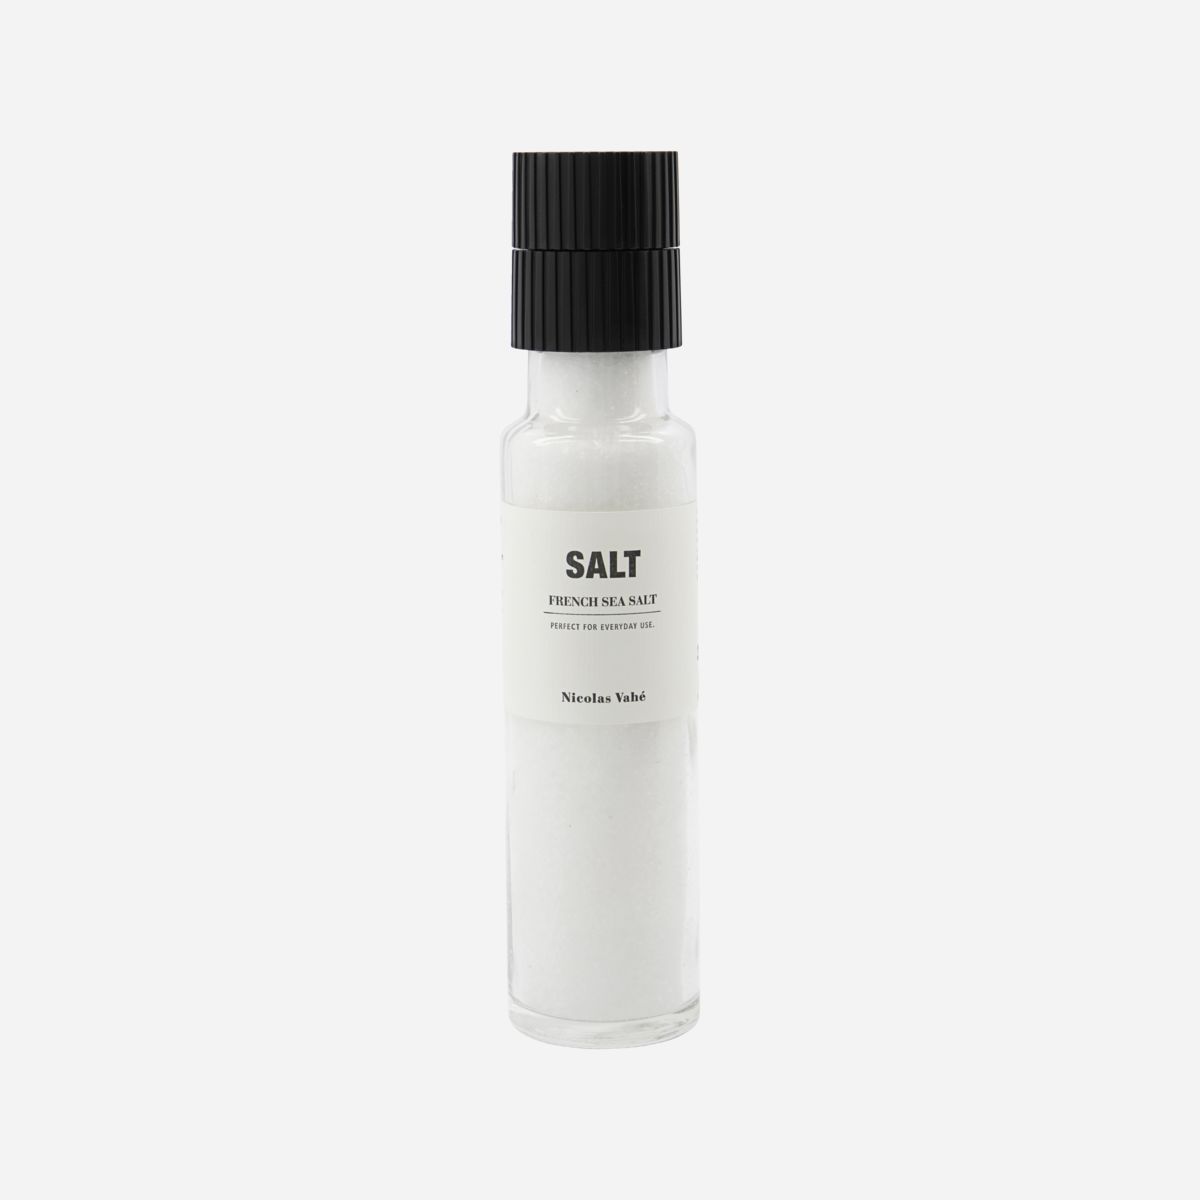 Salz "French Sea Salt"